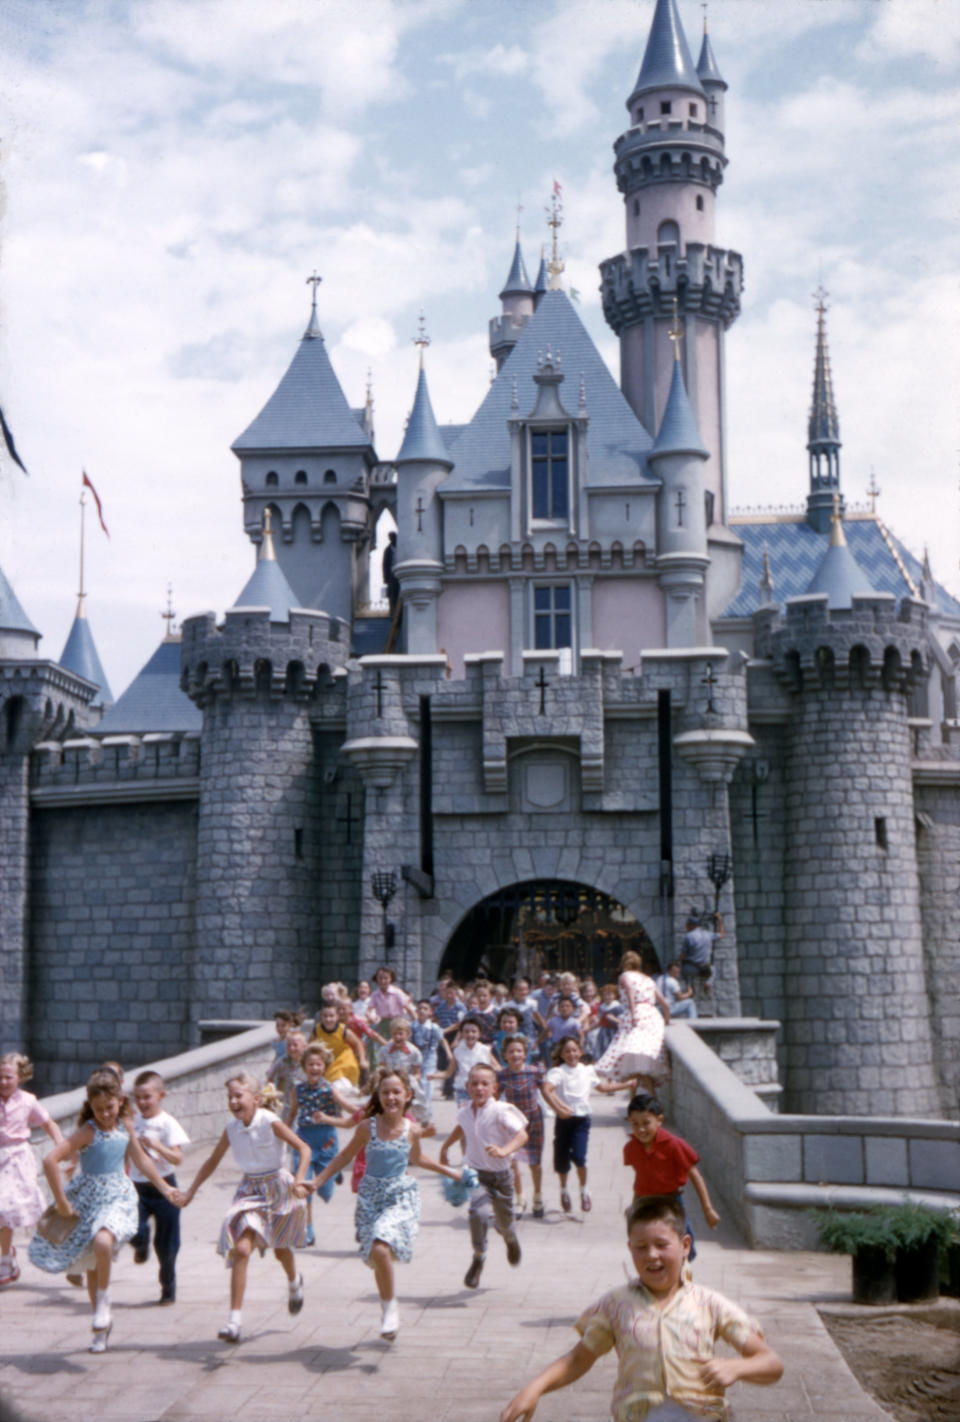 Kids cavort outside Sleeping Beauty Castle in 1955.